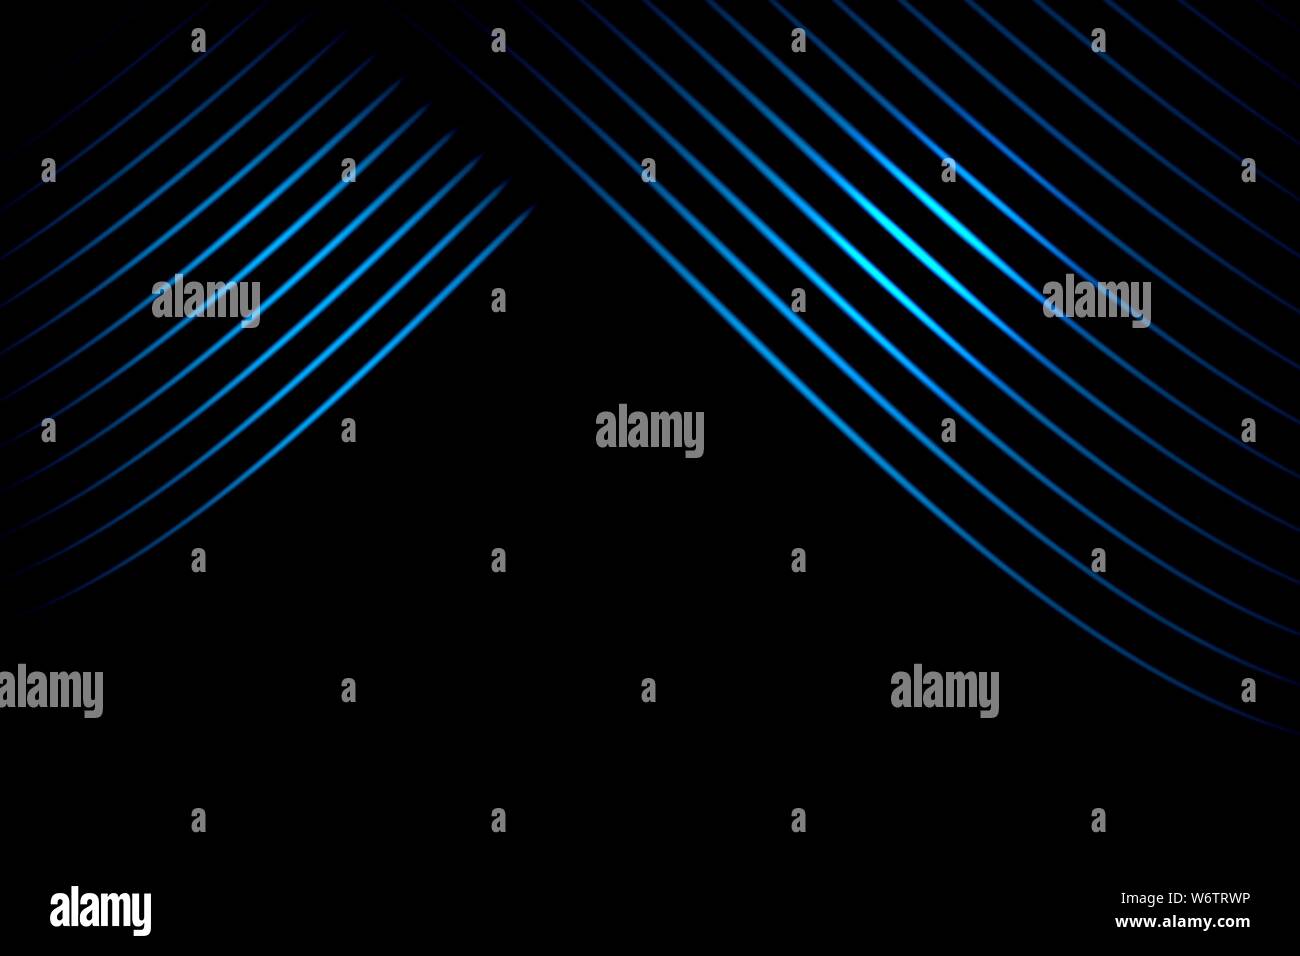 Rideau de scène abstrait bleu avec des lignes courbes sur fond noir Banque D'Images